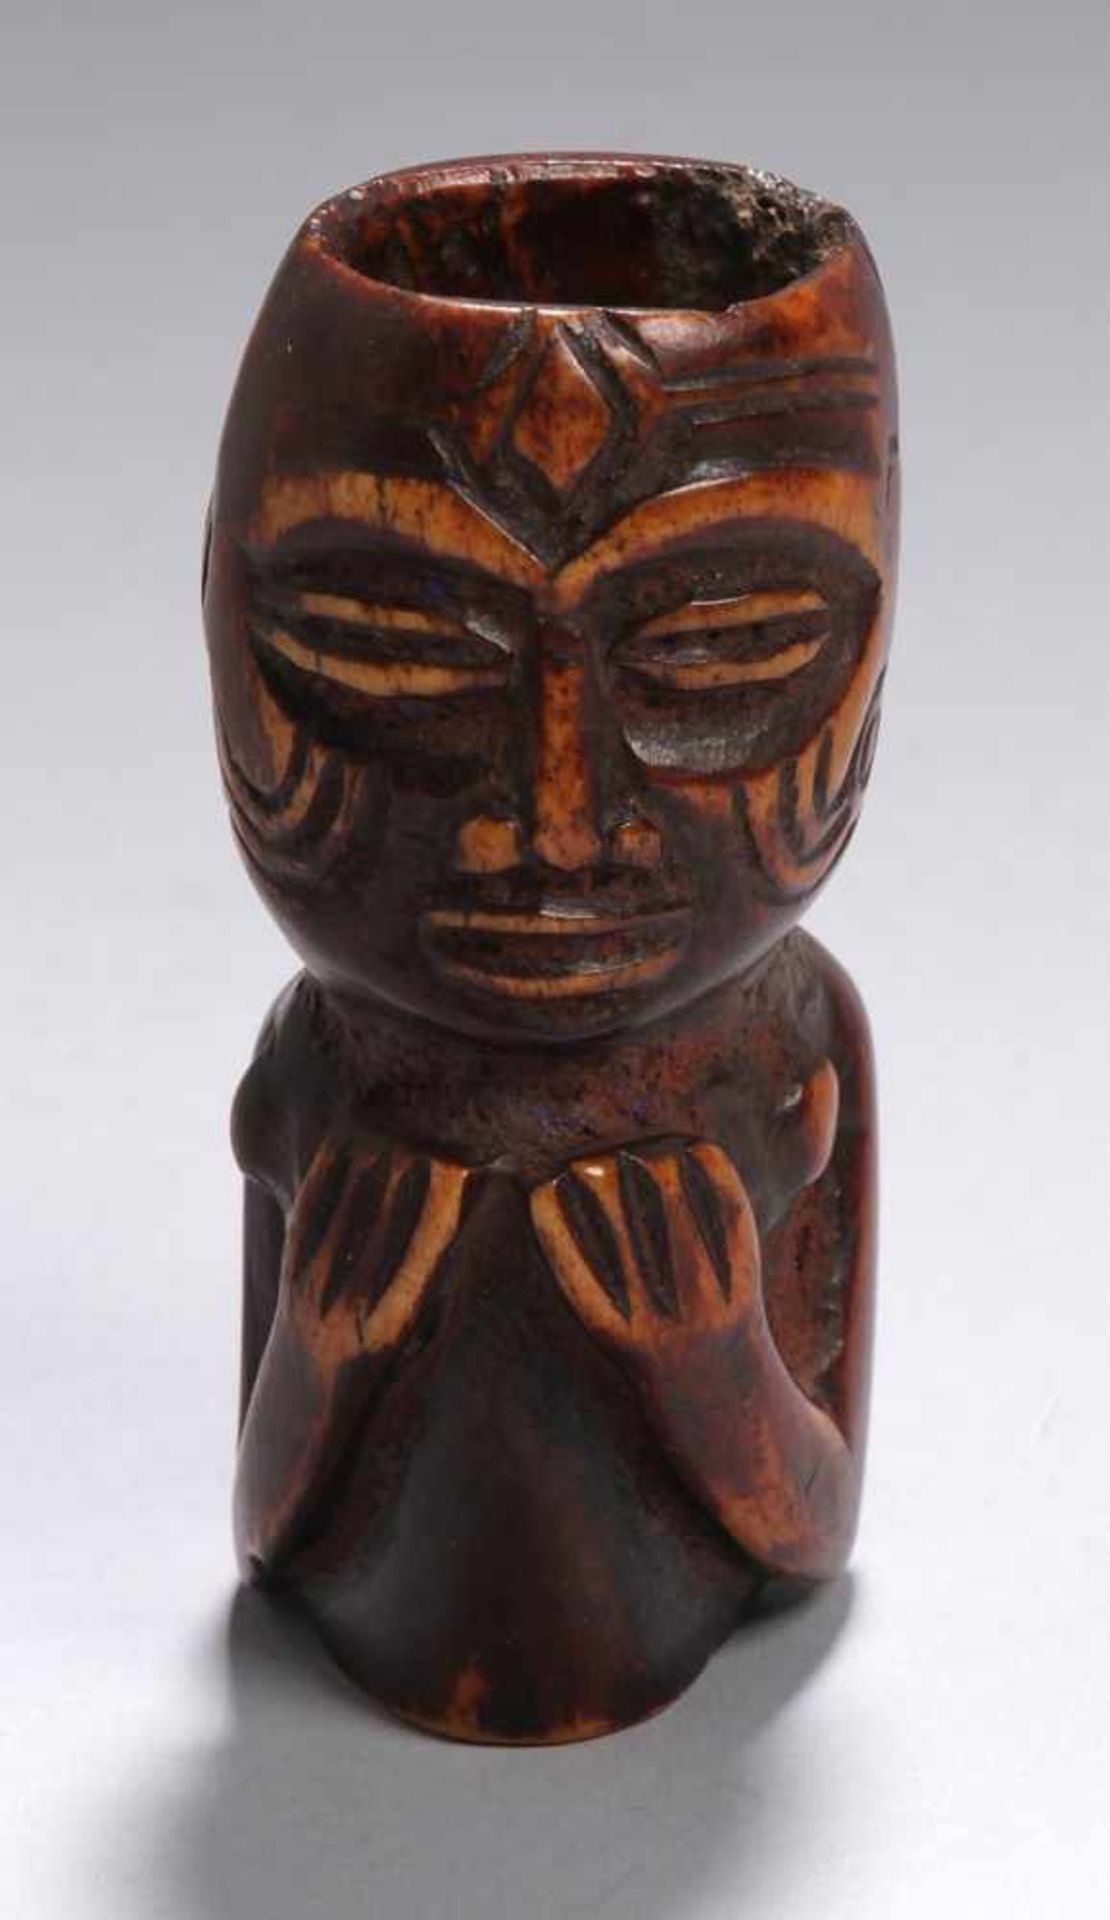 Bein-Ritualgefäß, Tchokwe, Kongo, Röhrenstück beschnitzt in Form von stehender Ahnenfigurmit an